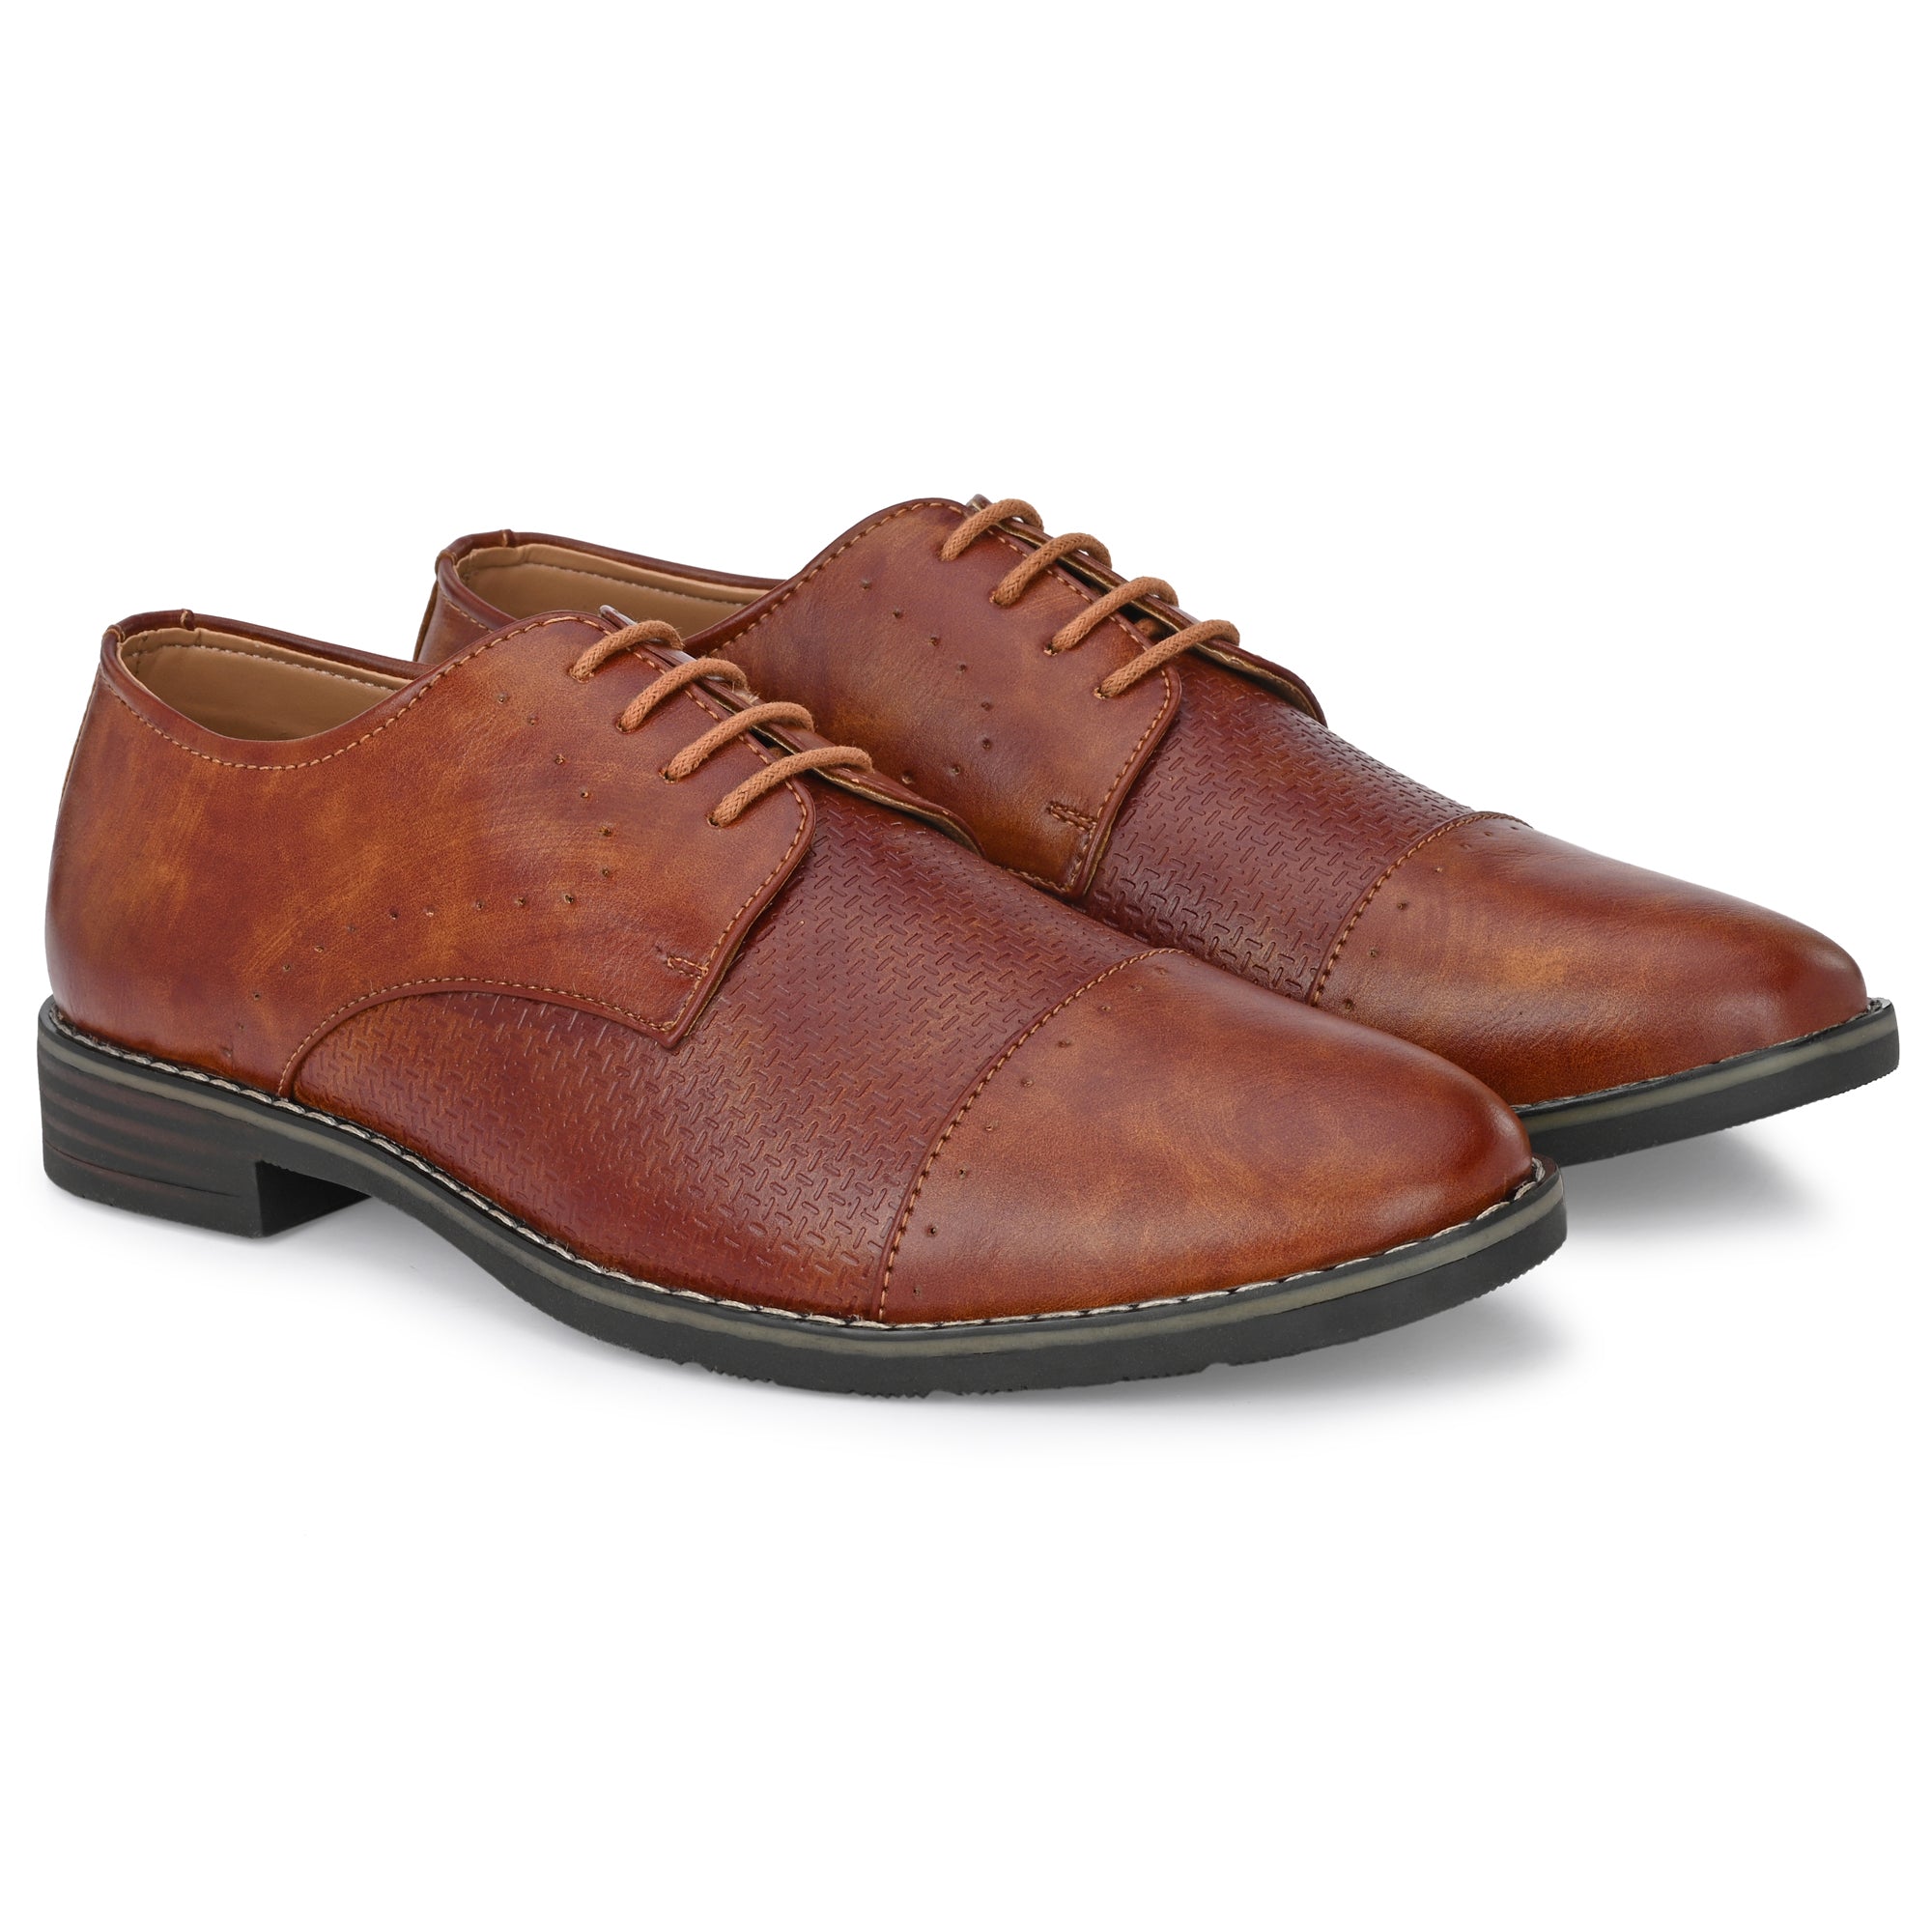 formal-lace-up-attitudist-shoes-for-men-3720tan